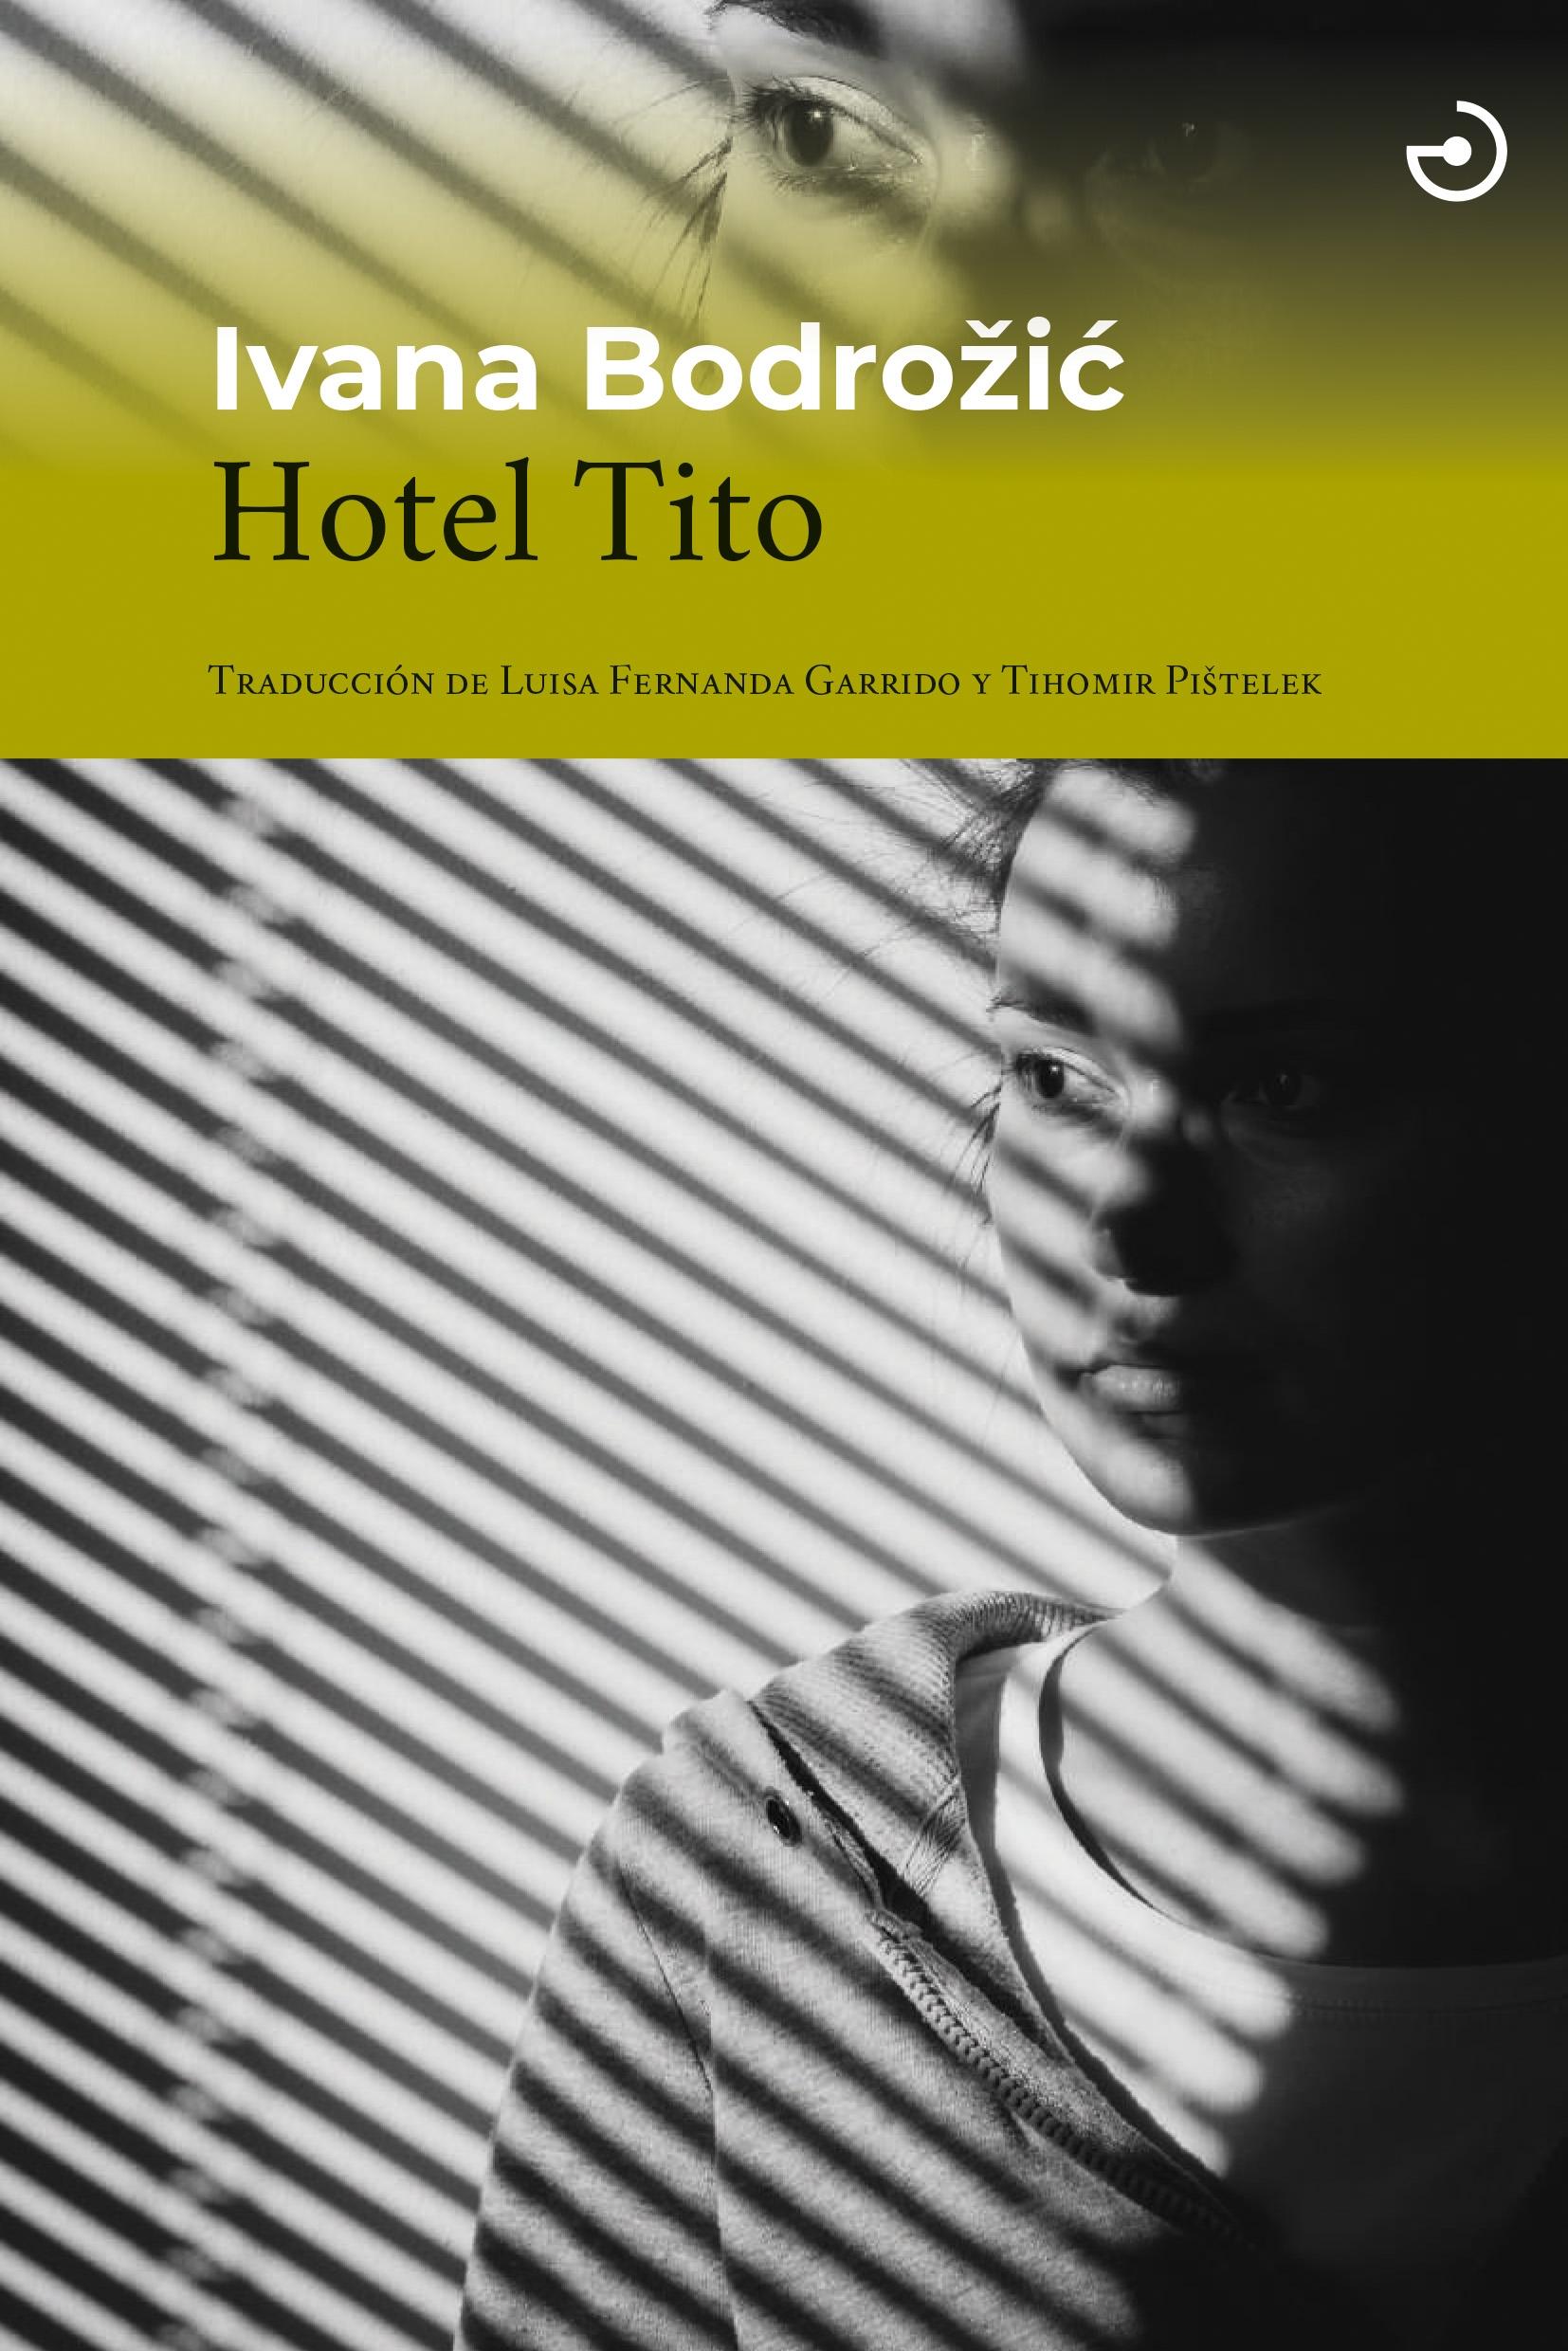 Hotel Tito. 